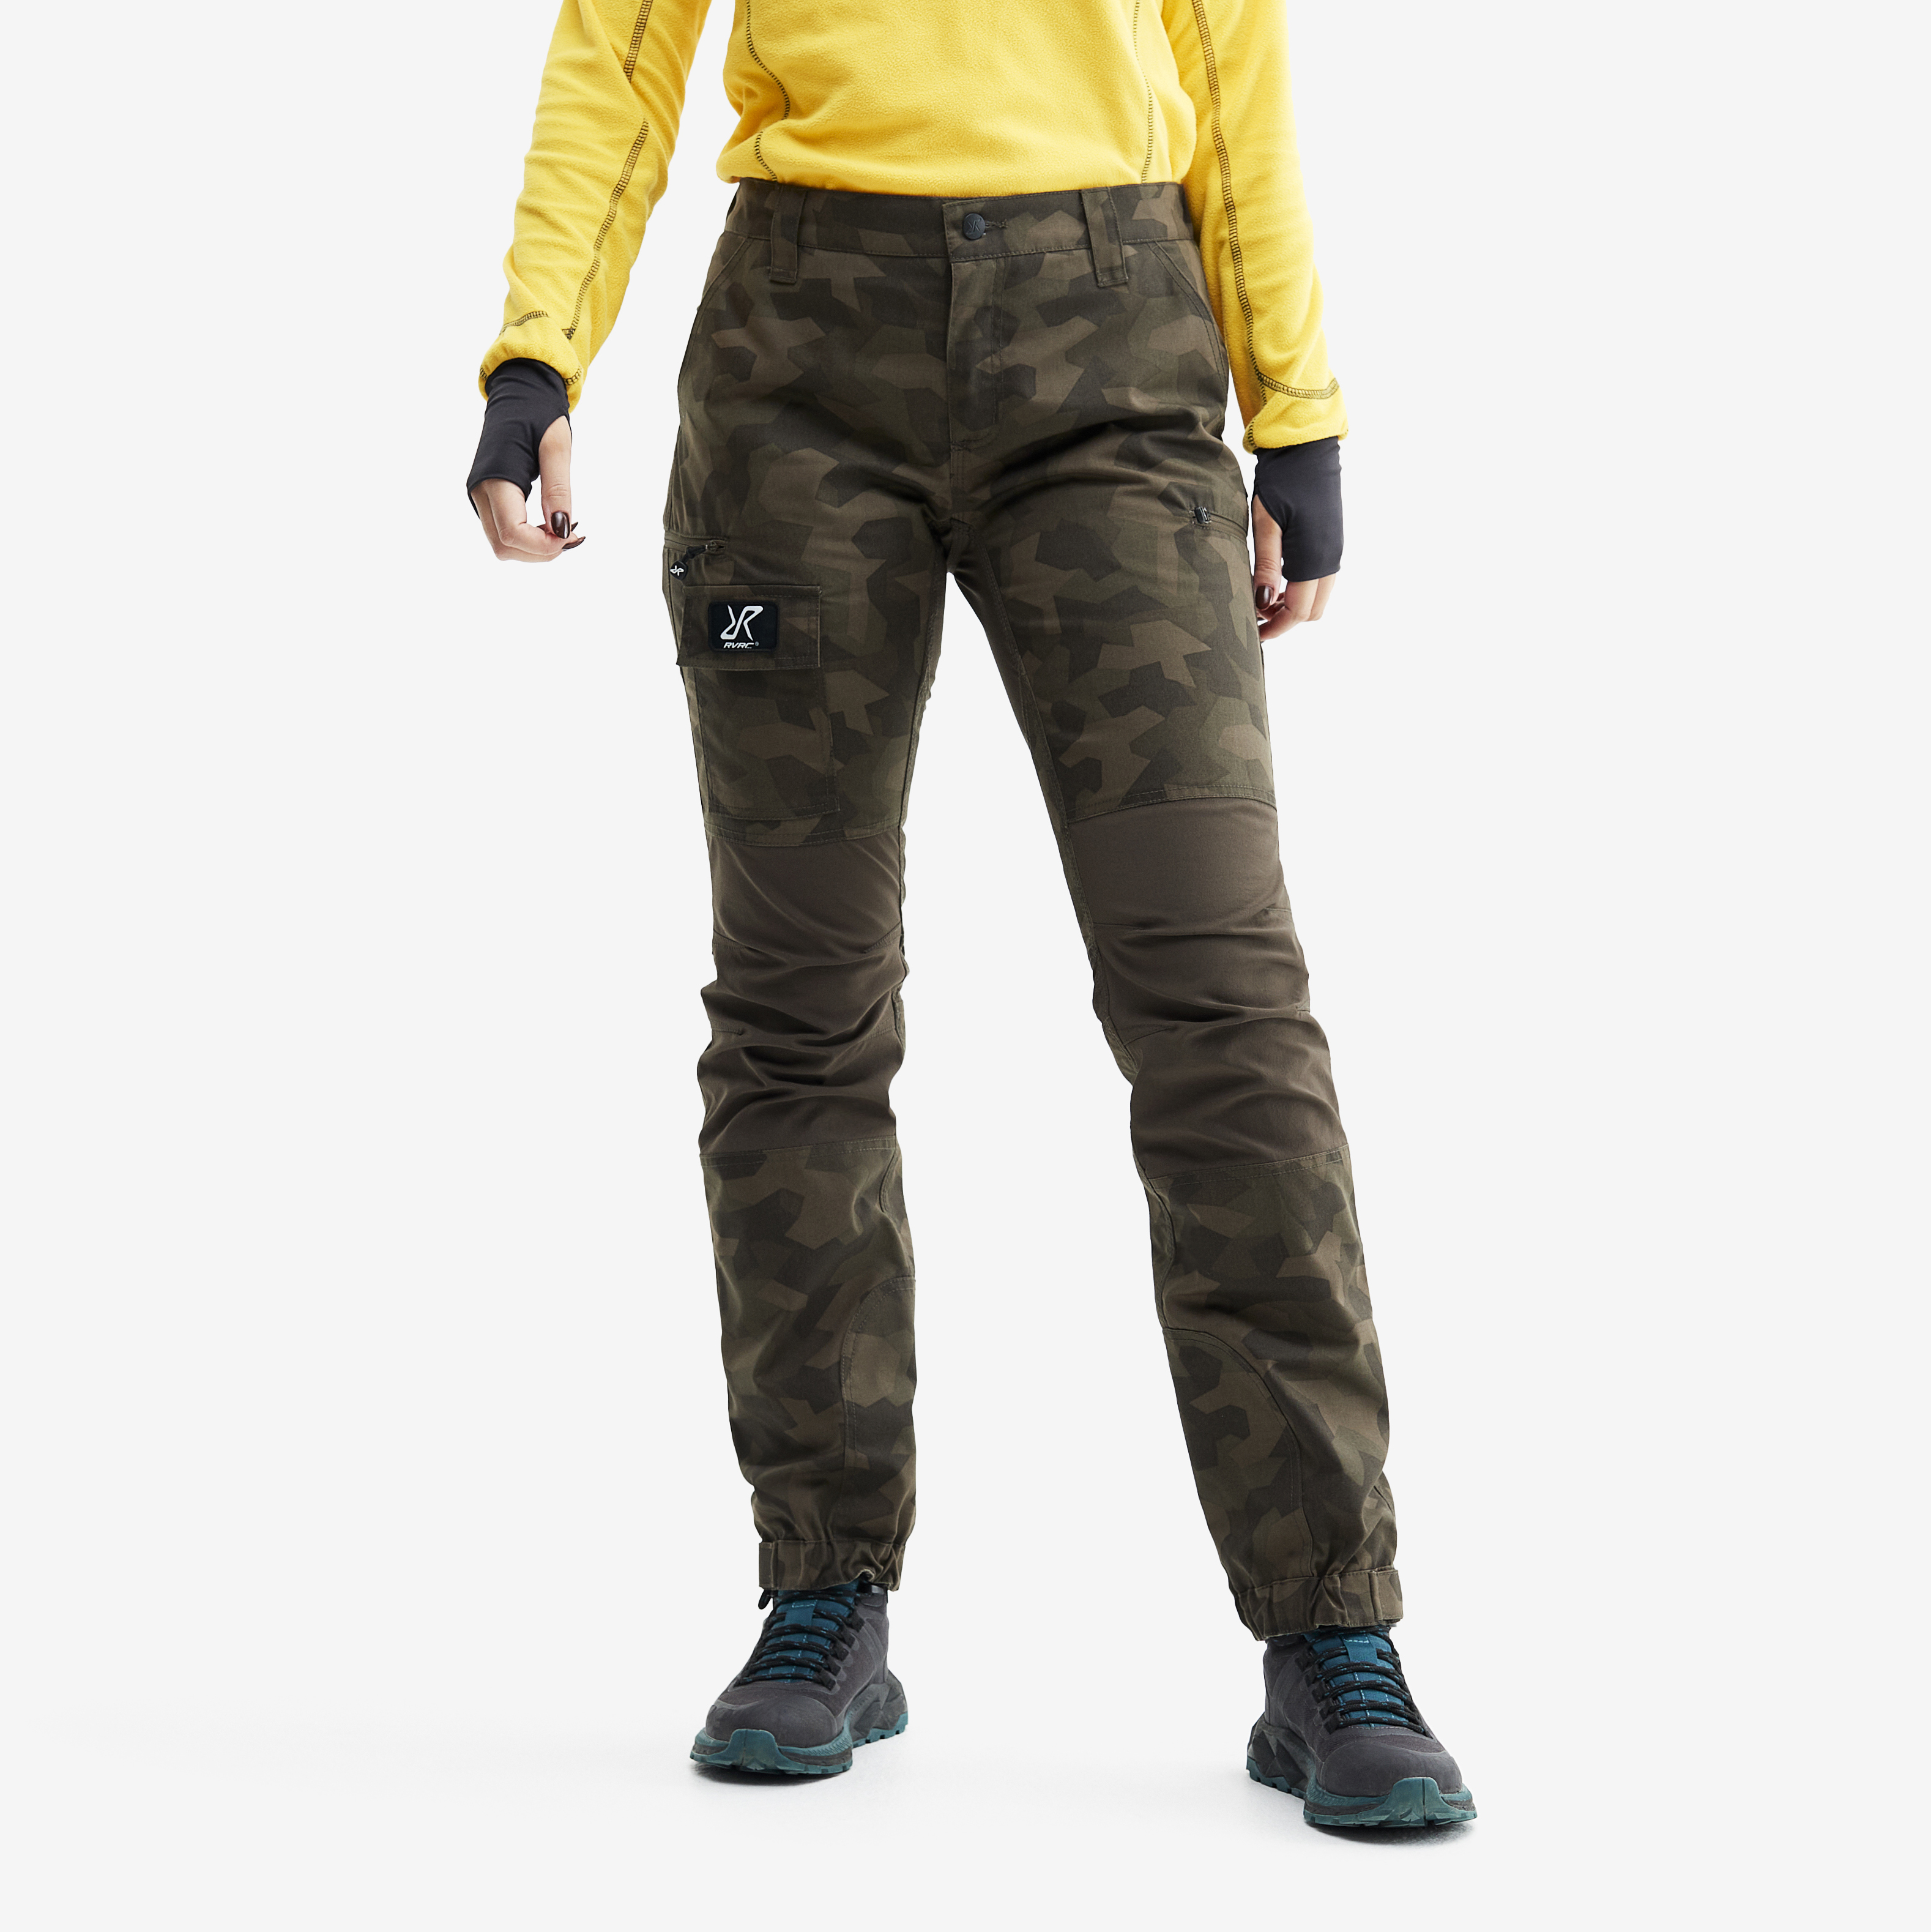 Nordwand outdoorové kalhoty pro ženy v hnědé barvě